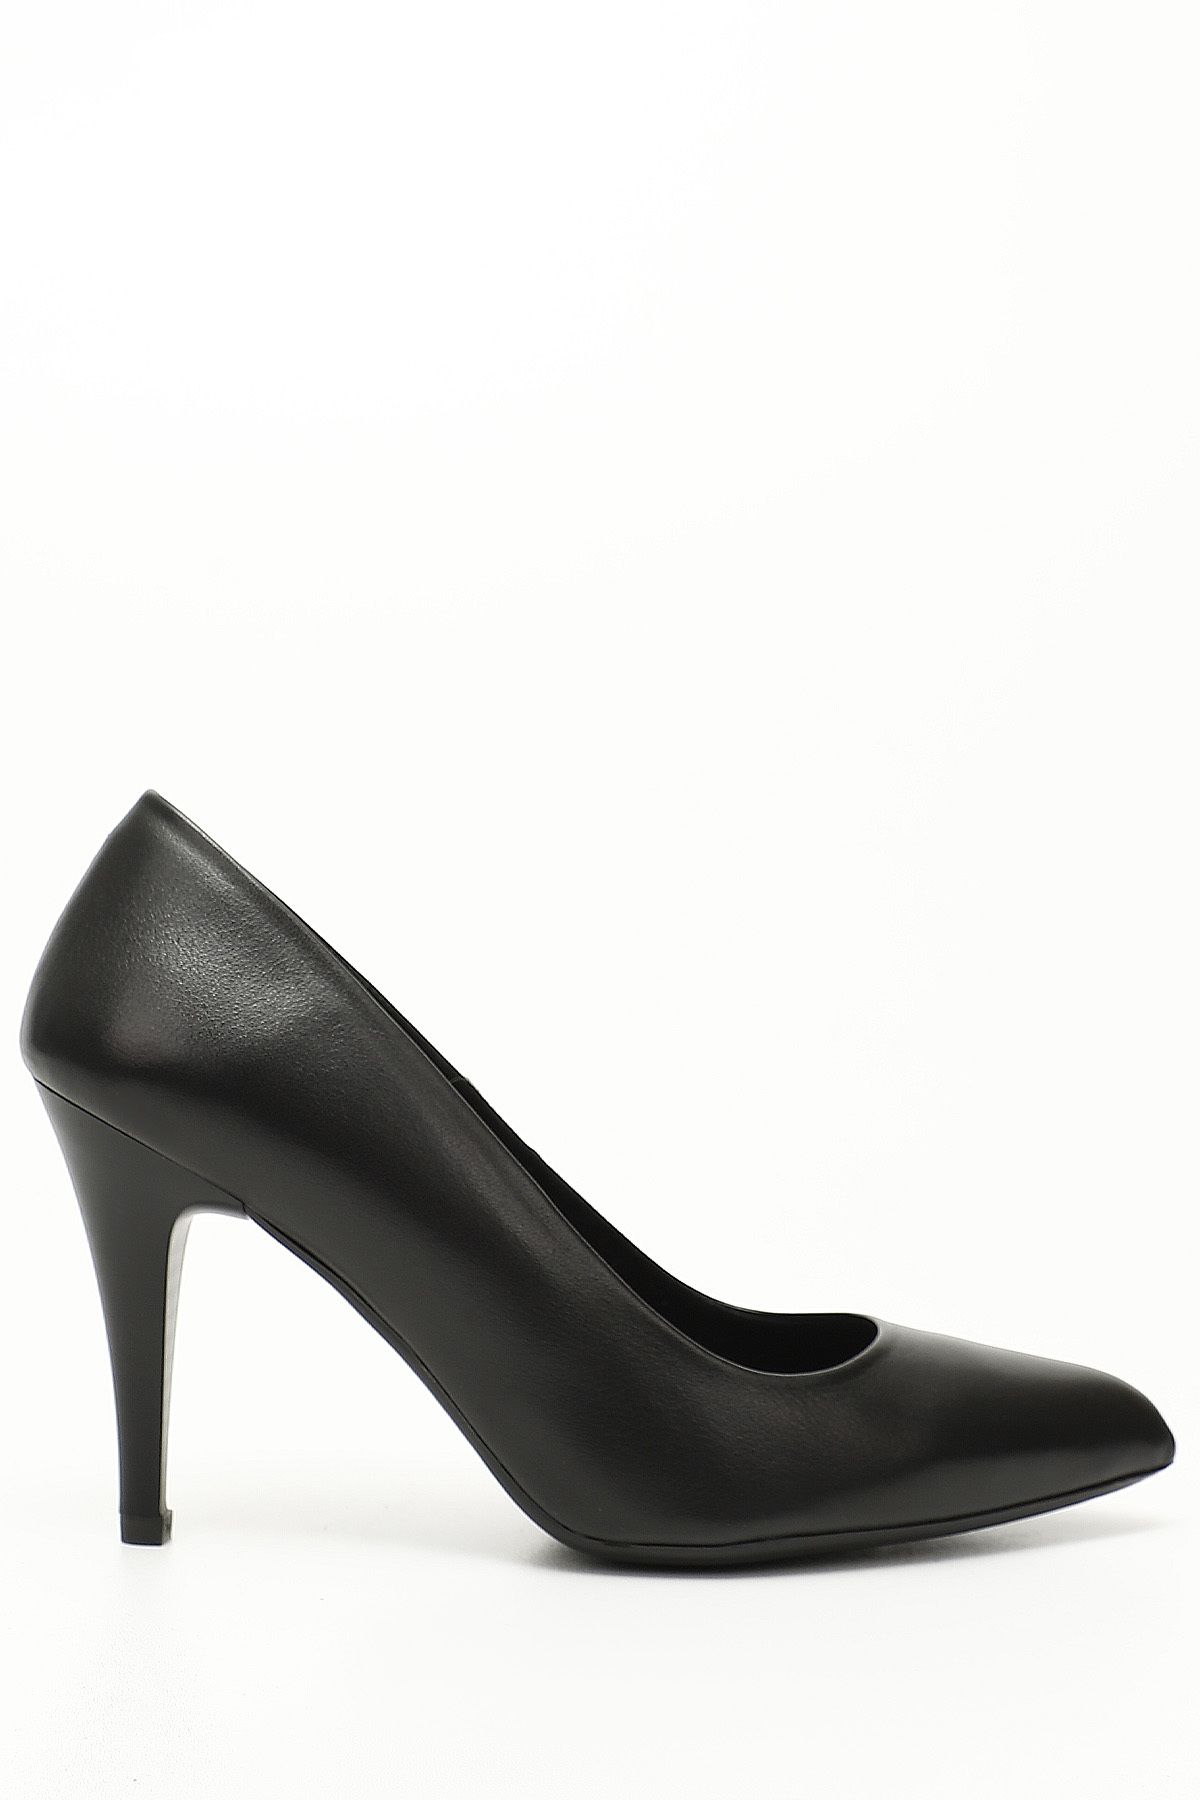 GÖNDERİ(R) Siyah Gön Hakiki Deri Sivri Burun Ince Yüksek Topuklu Stiletto Kadın Ayakkabı 22354